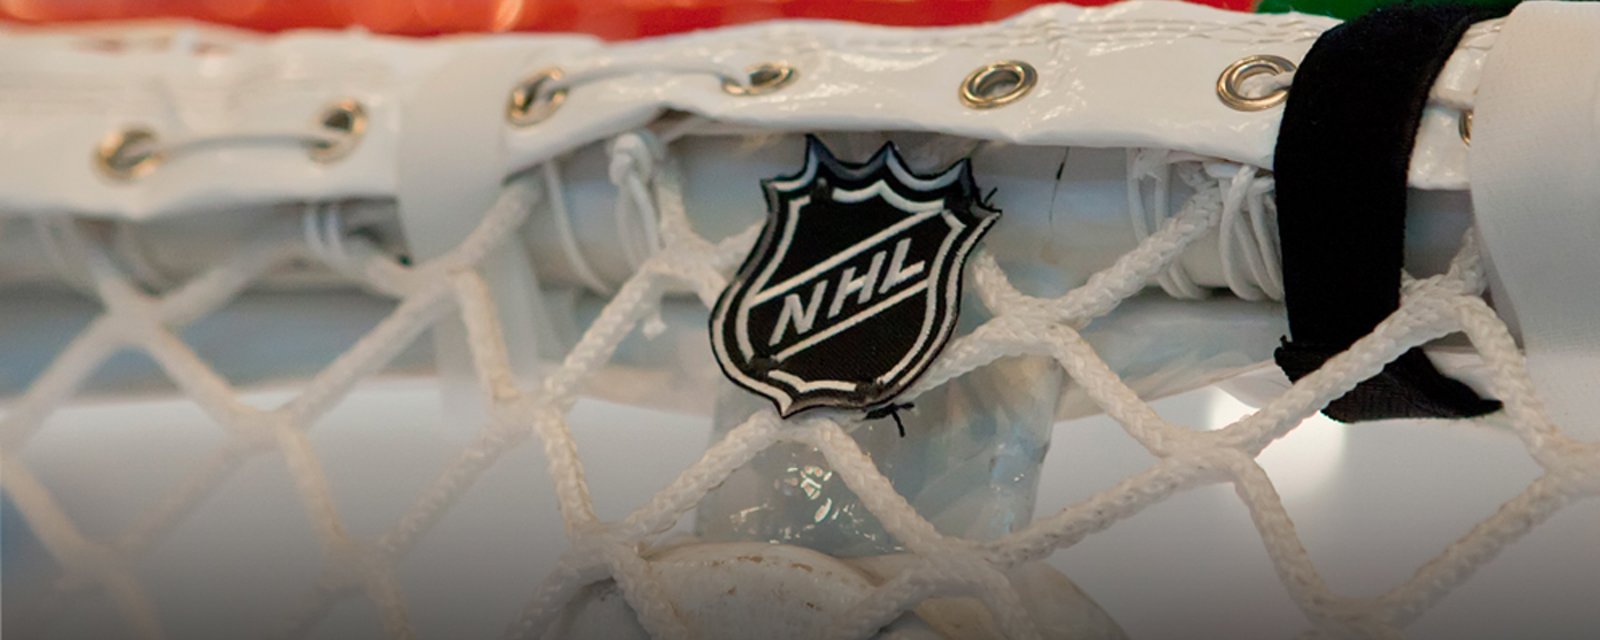 NHL head coach narrowly avoids firing